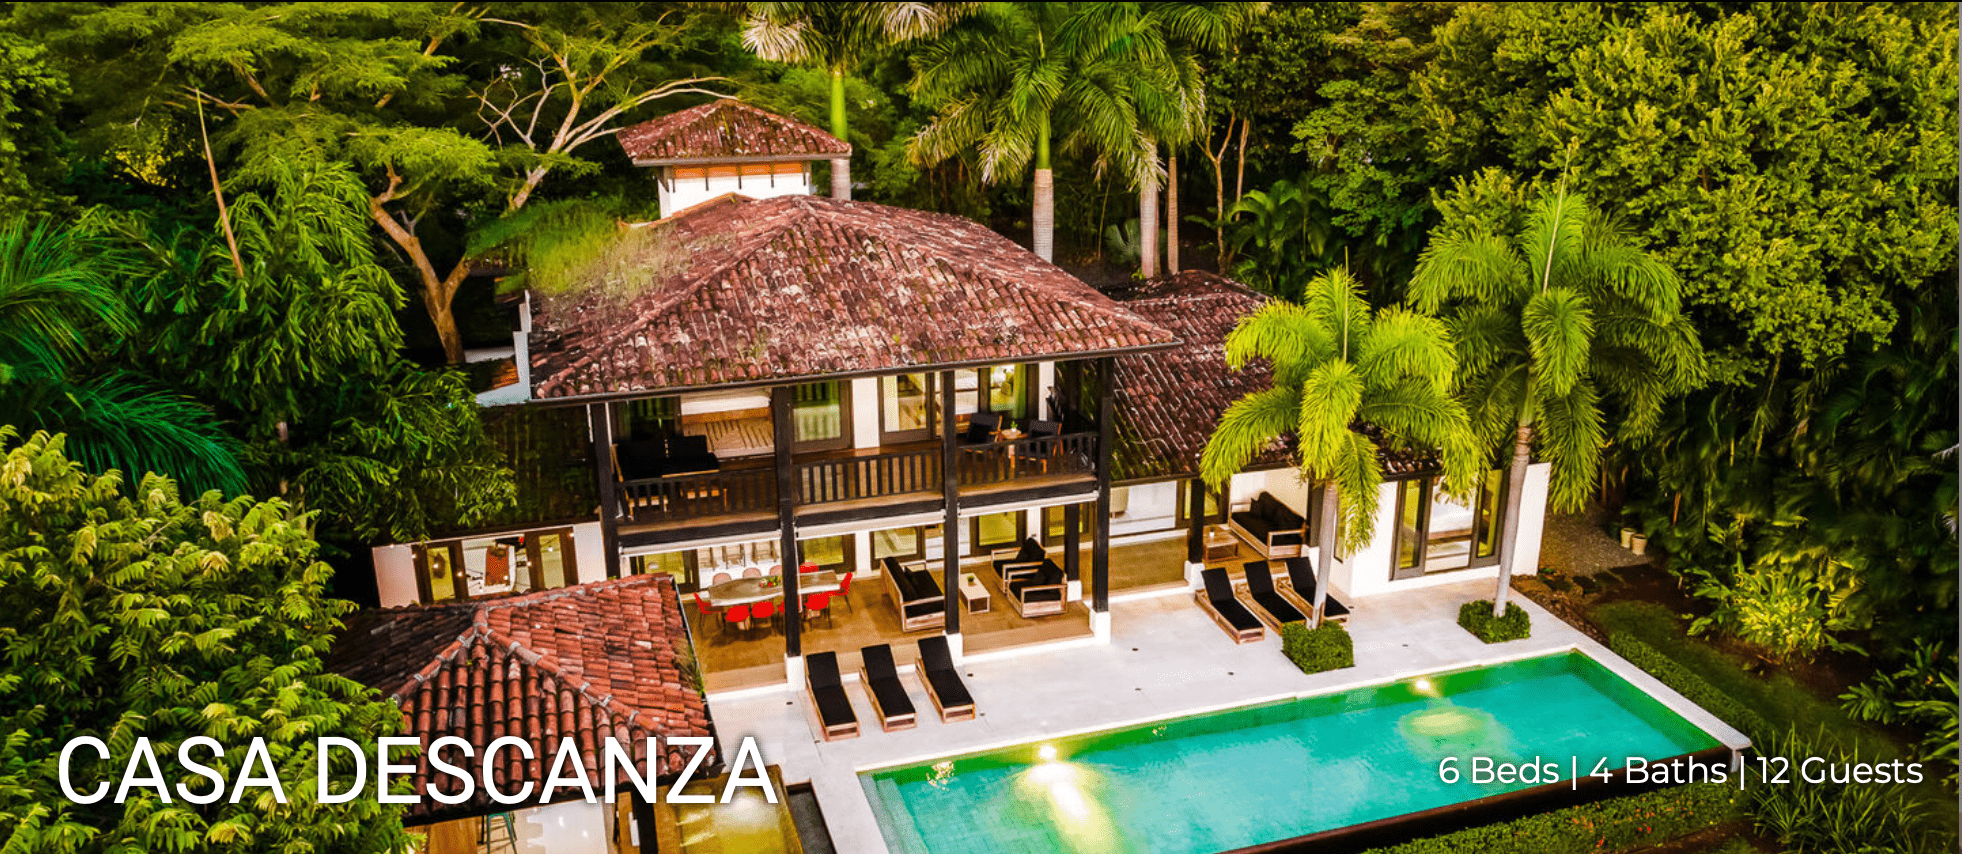 Casa Descanza Costa Rica luxury villas Hacienda Pinilla